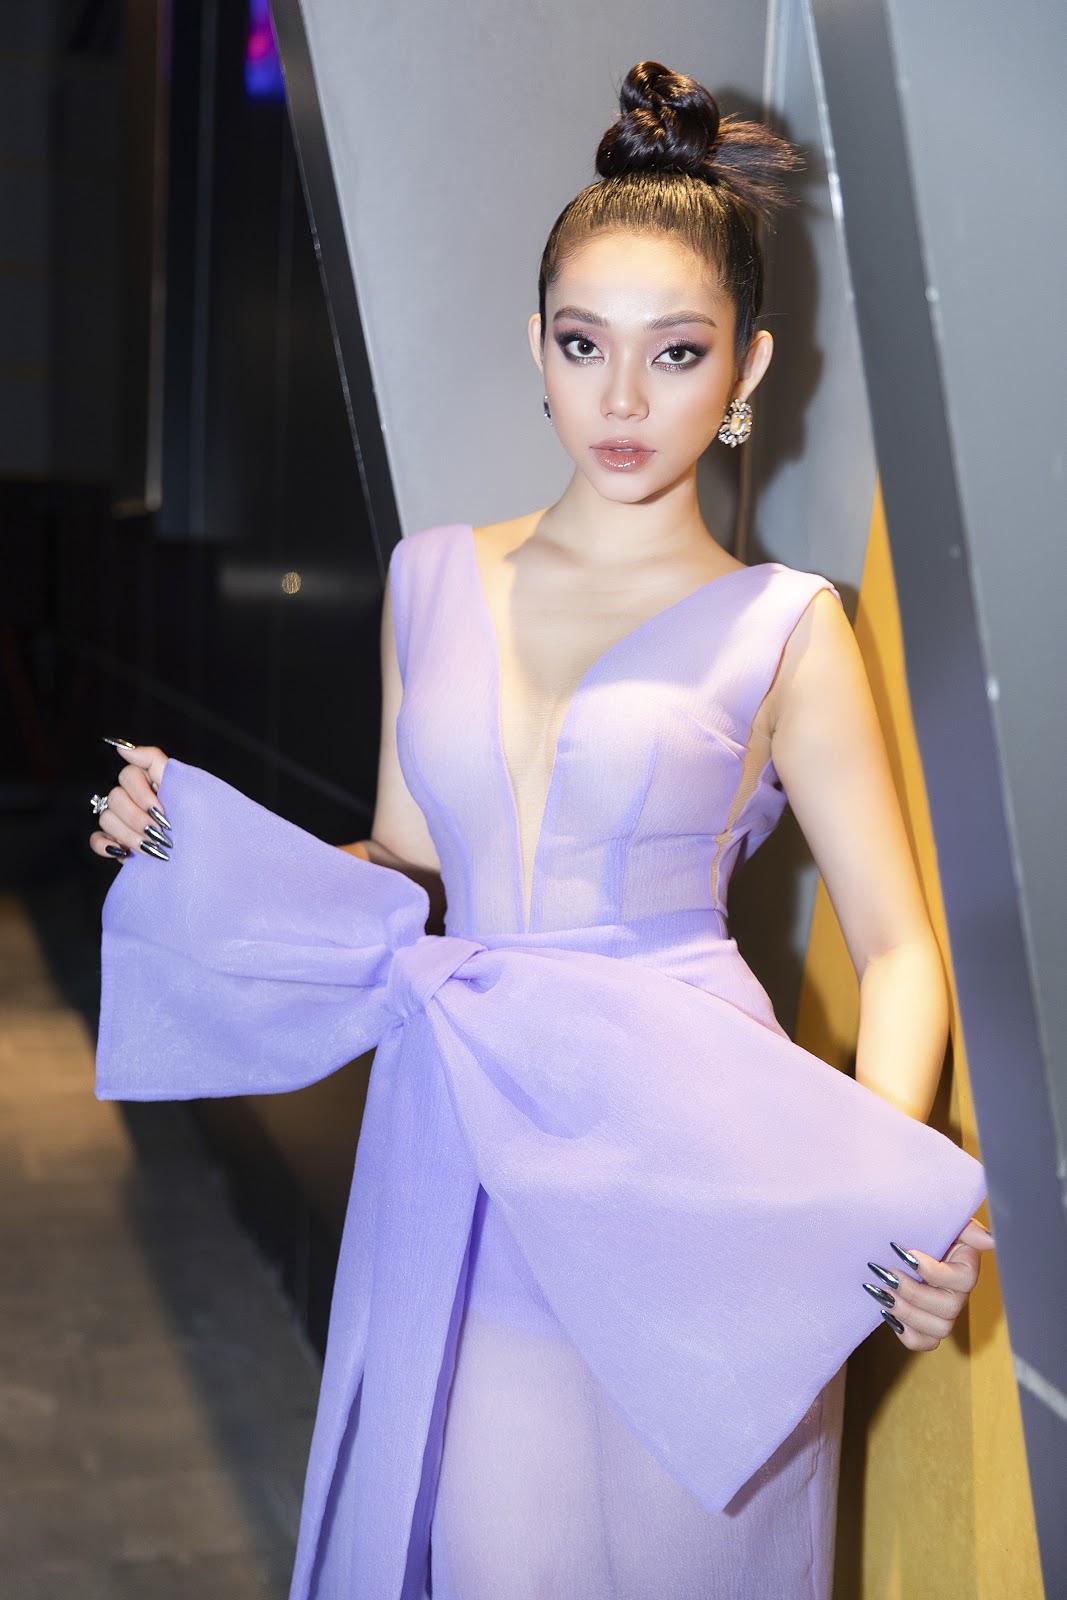 Lâm Thu Hồng diện váy tím sang chảnh, hút mắt khán giả tại Tuần lễ Thời trang Quốc tế Việt Nam 2020 - Hình 1